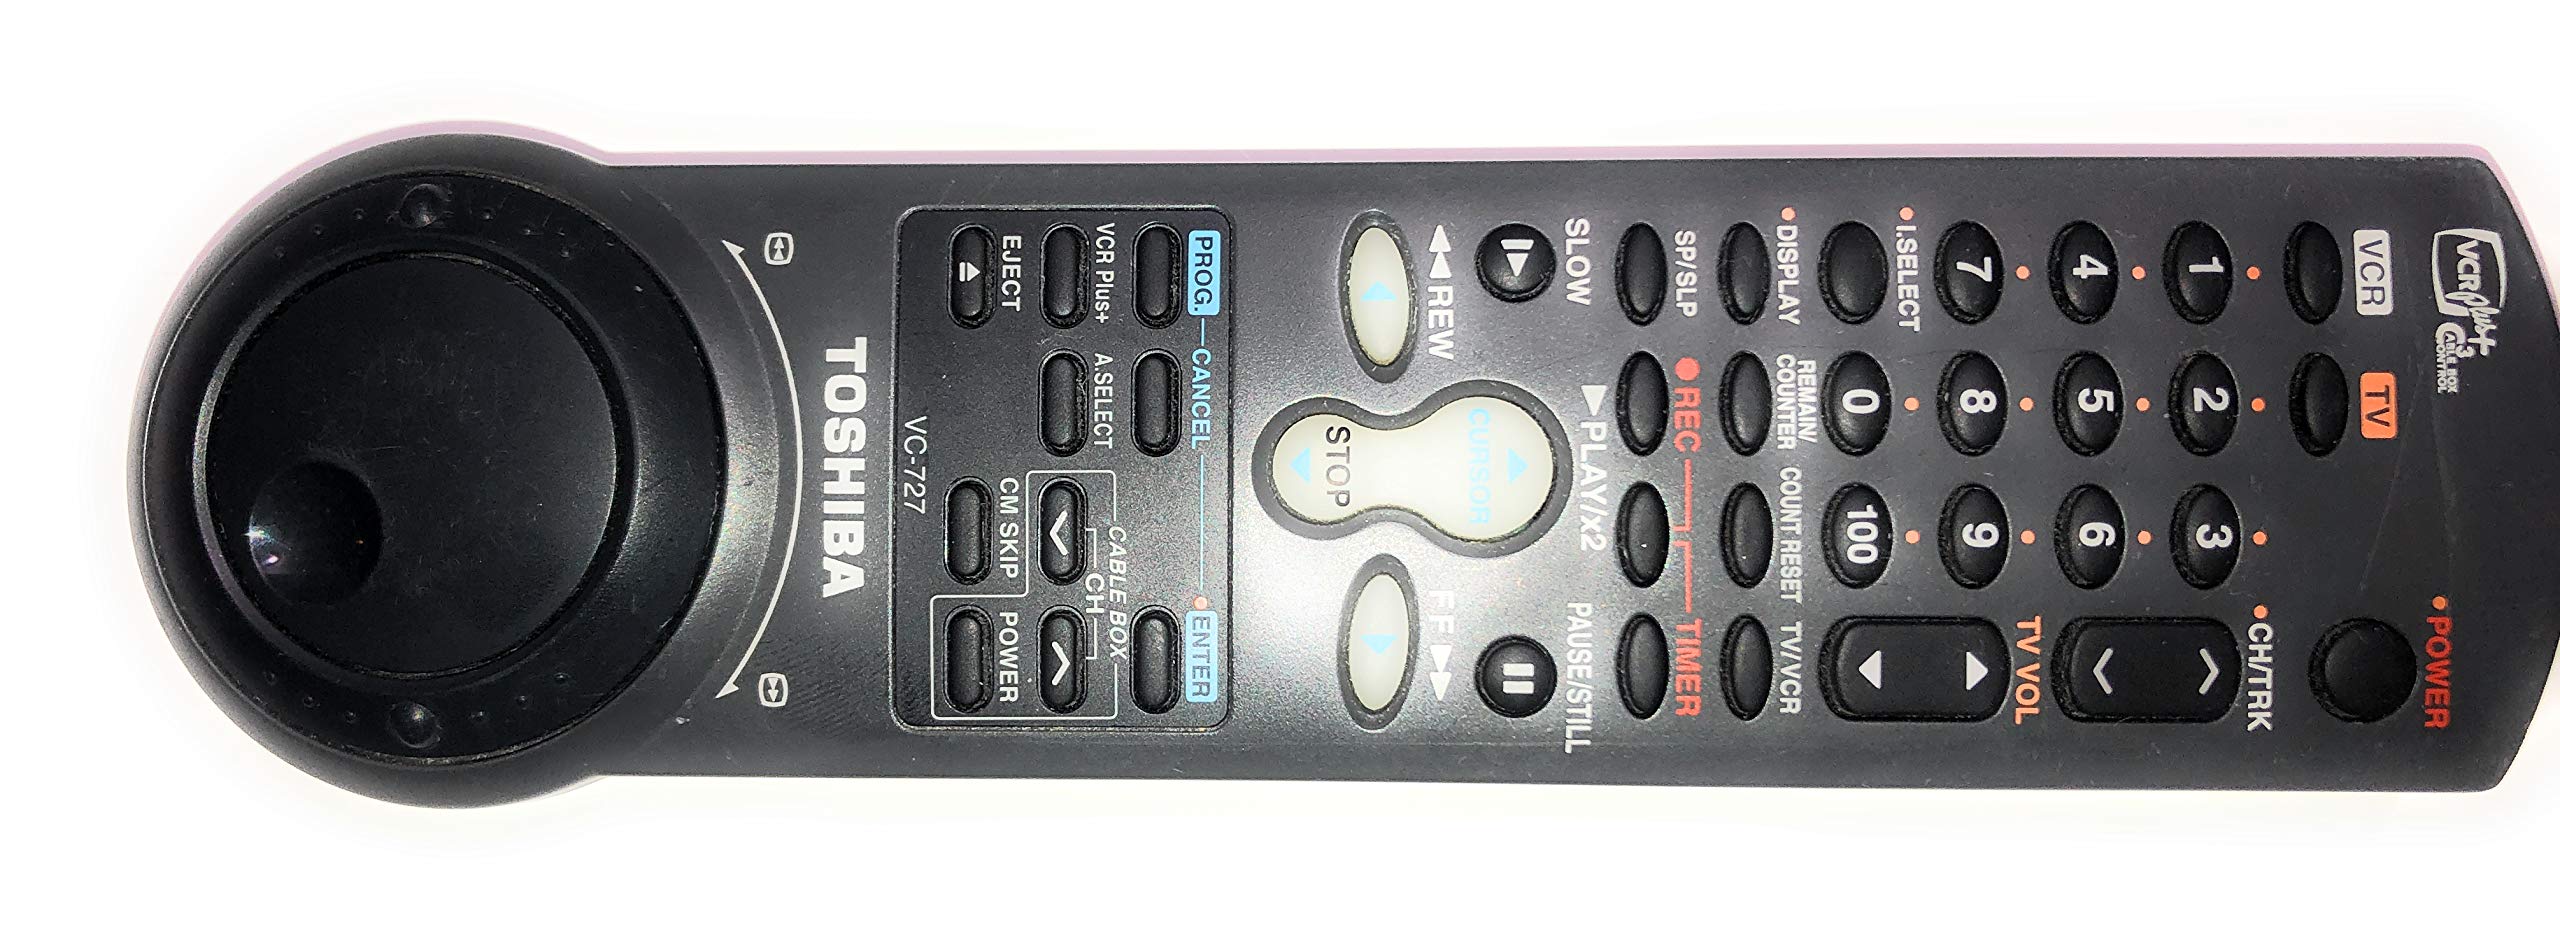 Toshiba W727 4-Head Hi-Fi VCR